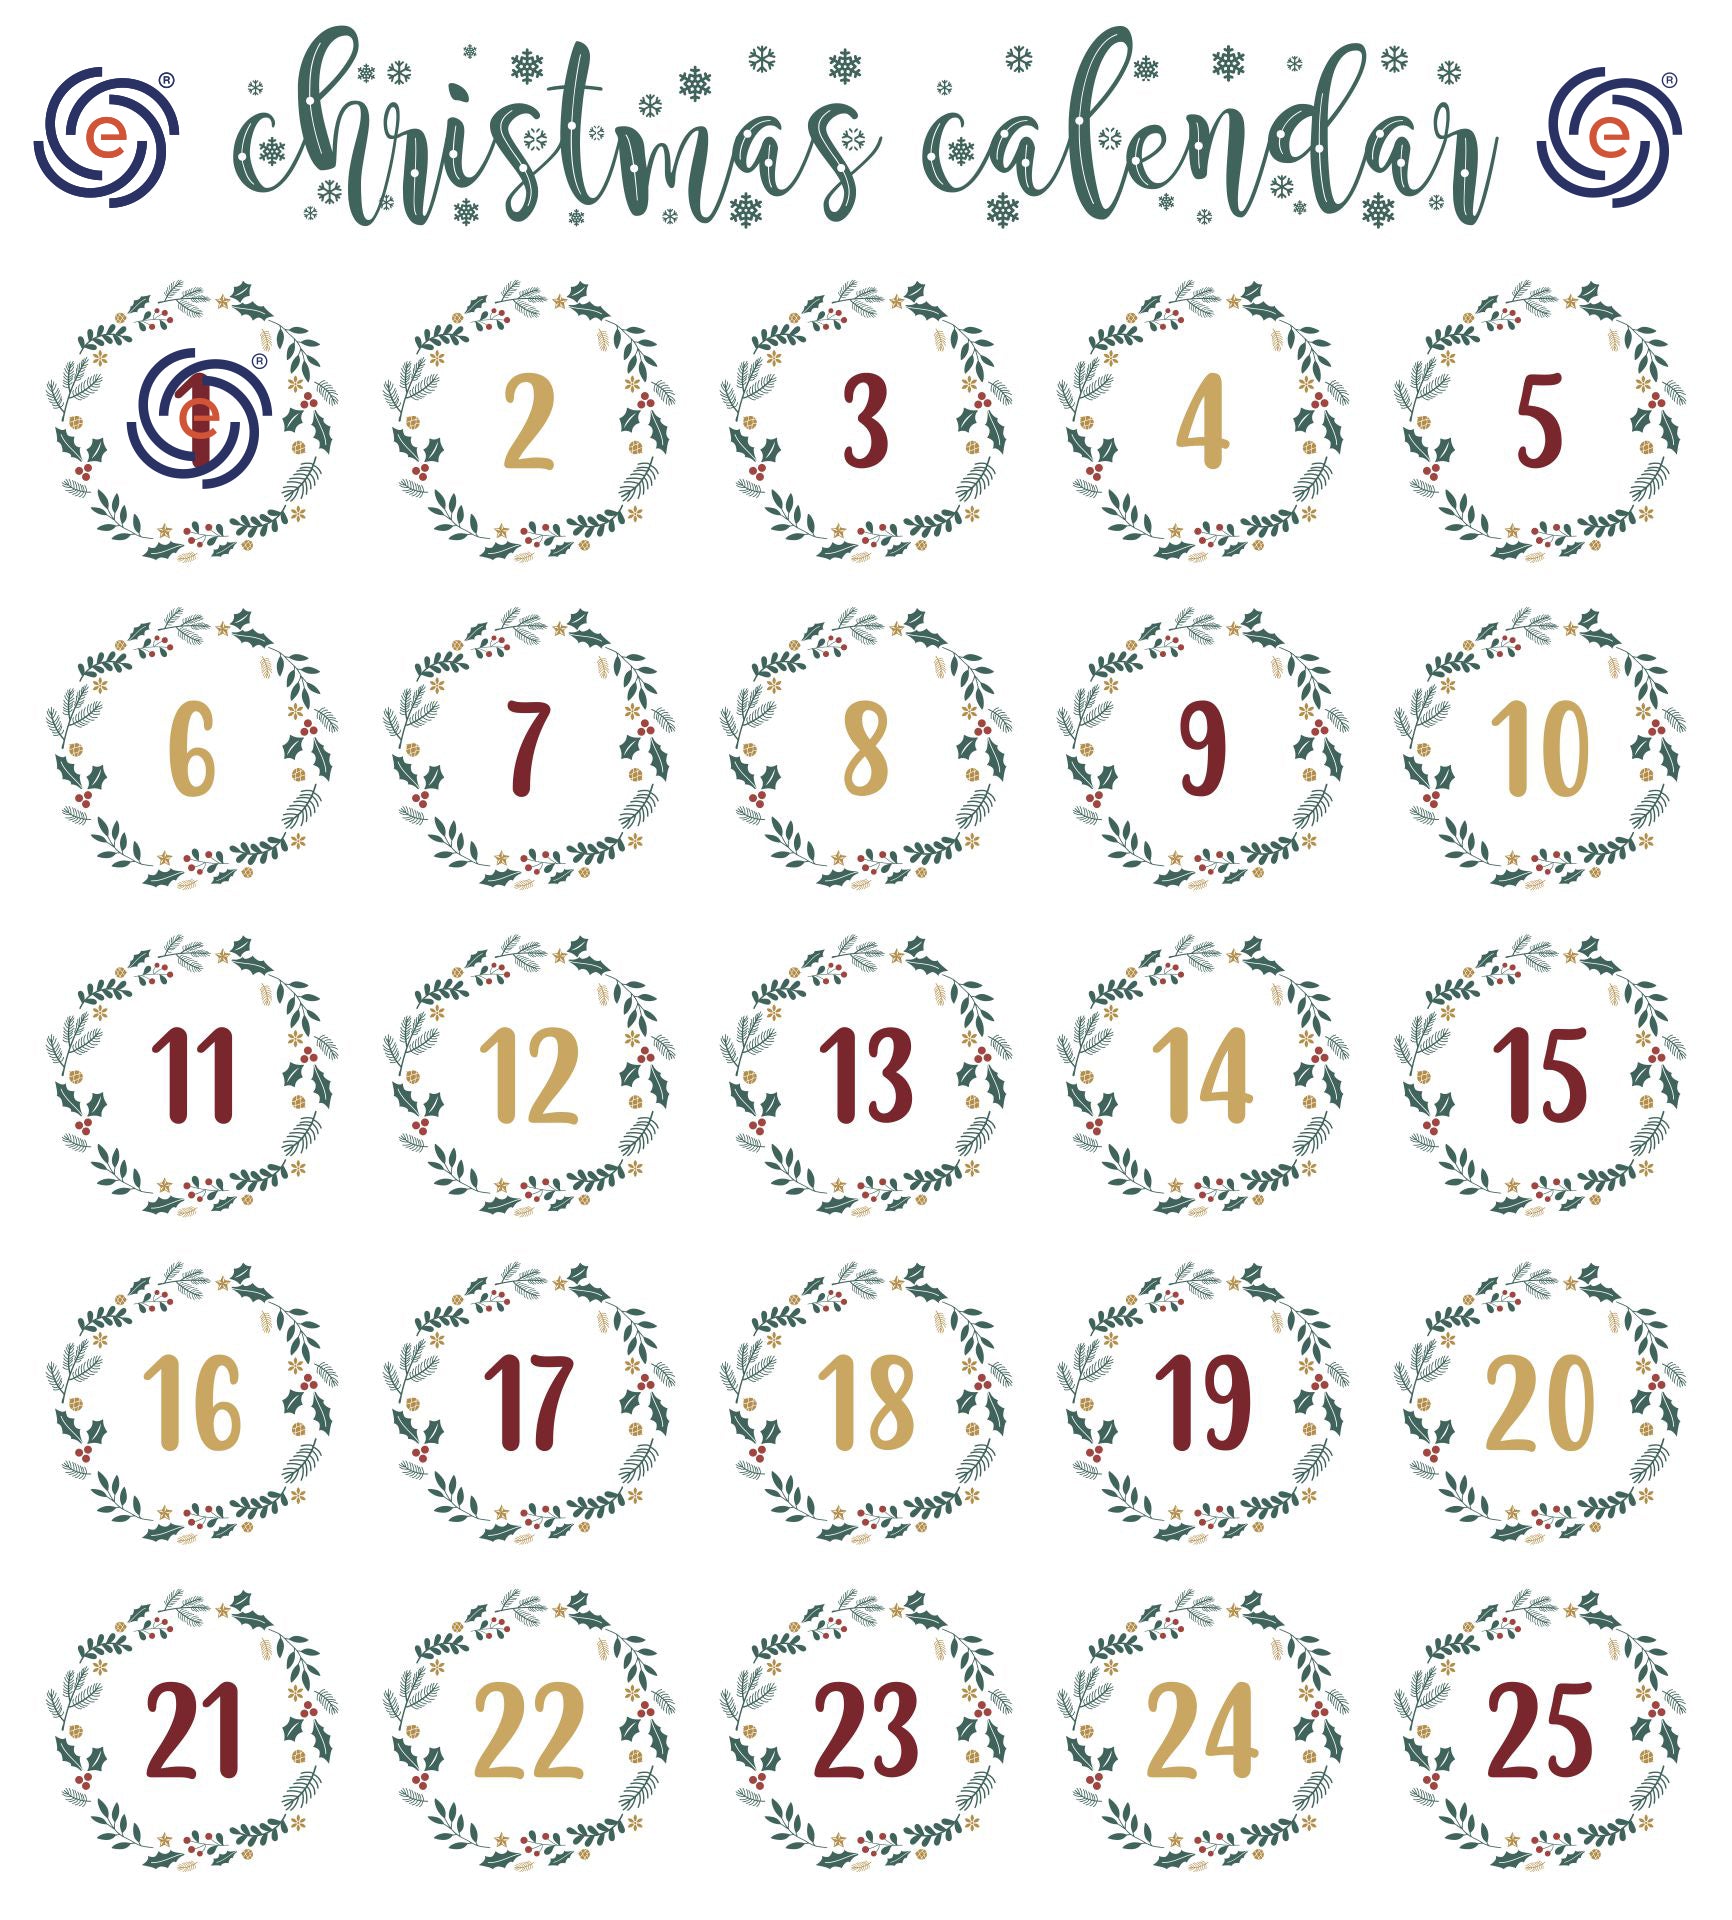 December 2nd Christmas Discount Calendar - Takazumi Yugen